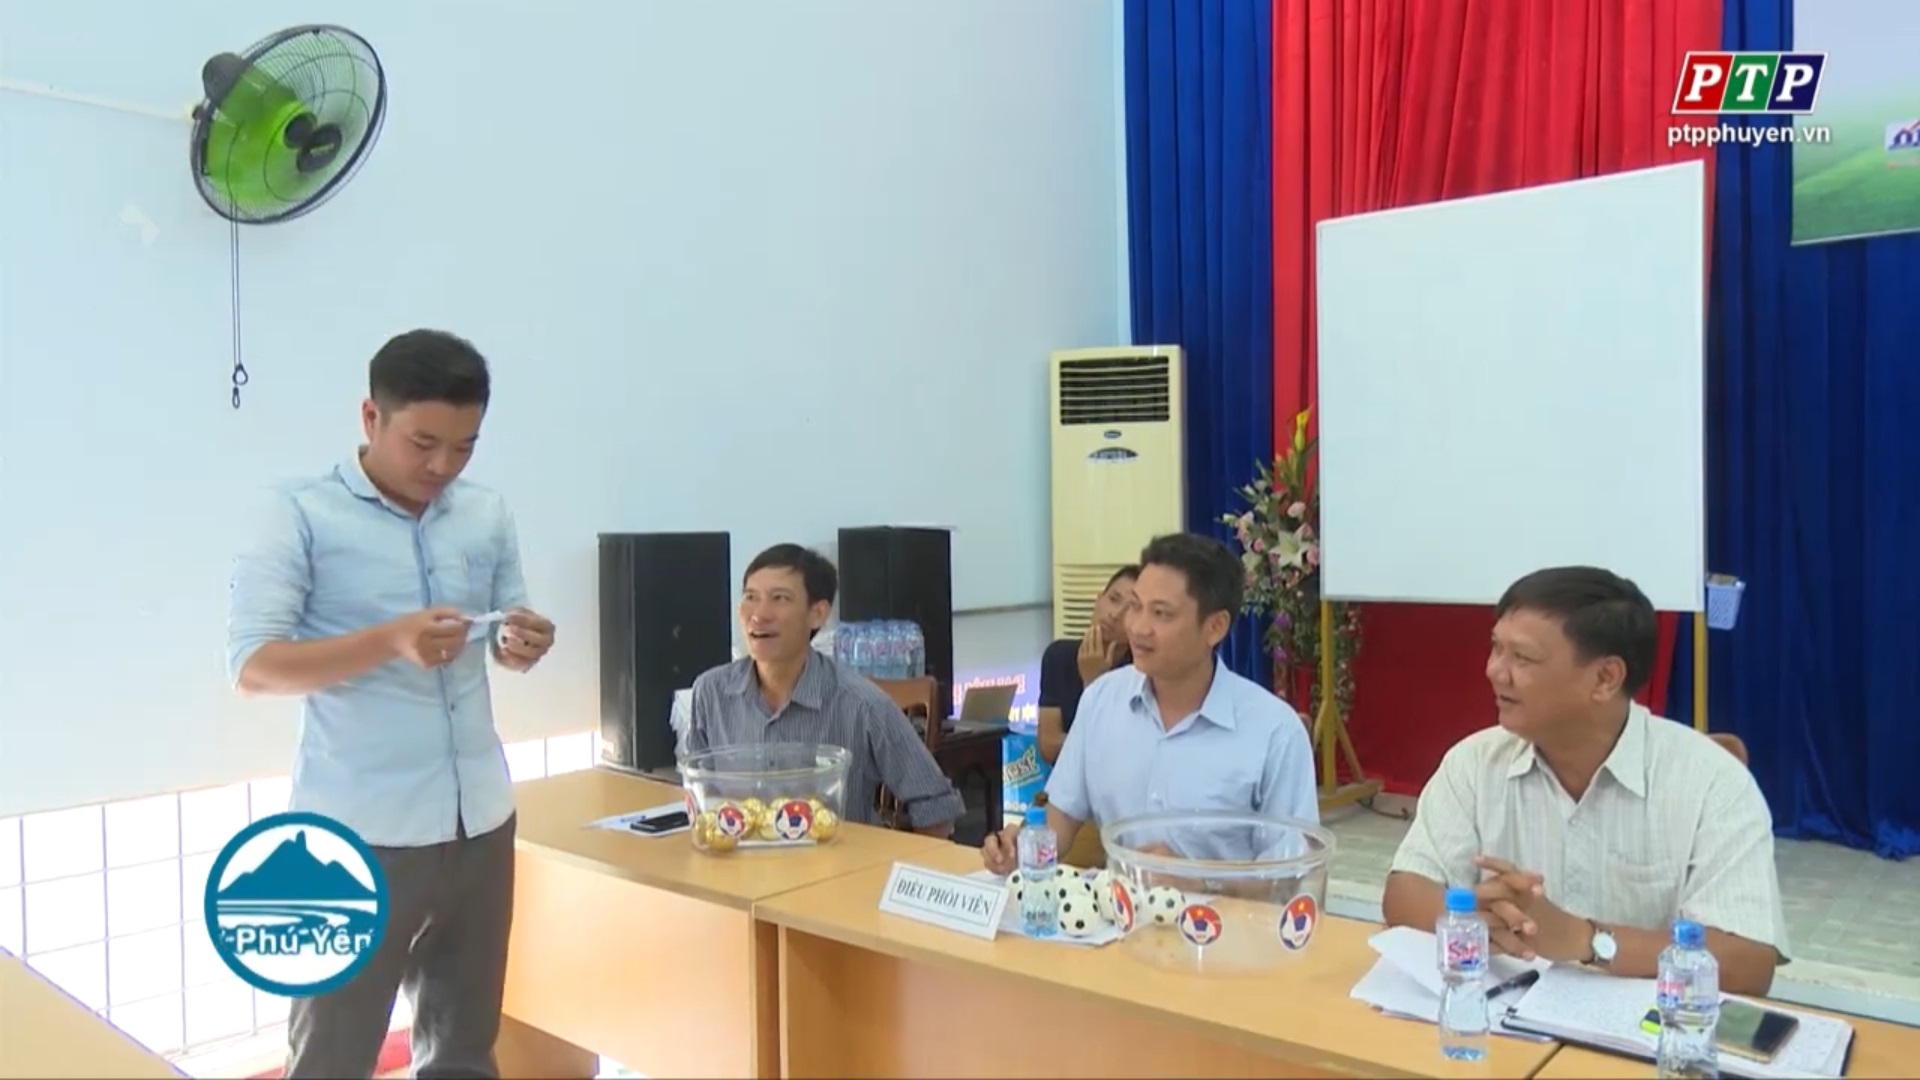 9 đội bóng tranh tài giải bóng đá nhi đồng tỉnh Phú Yên 2019 cúp PTP